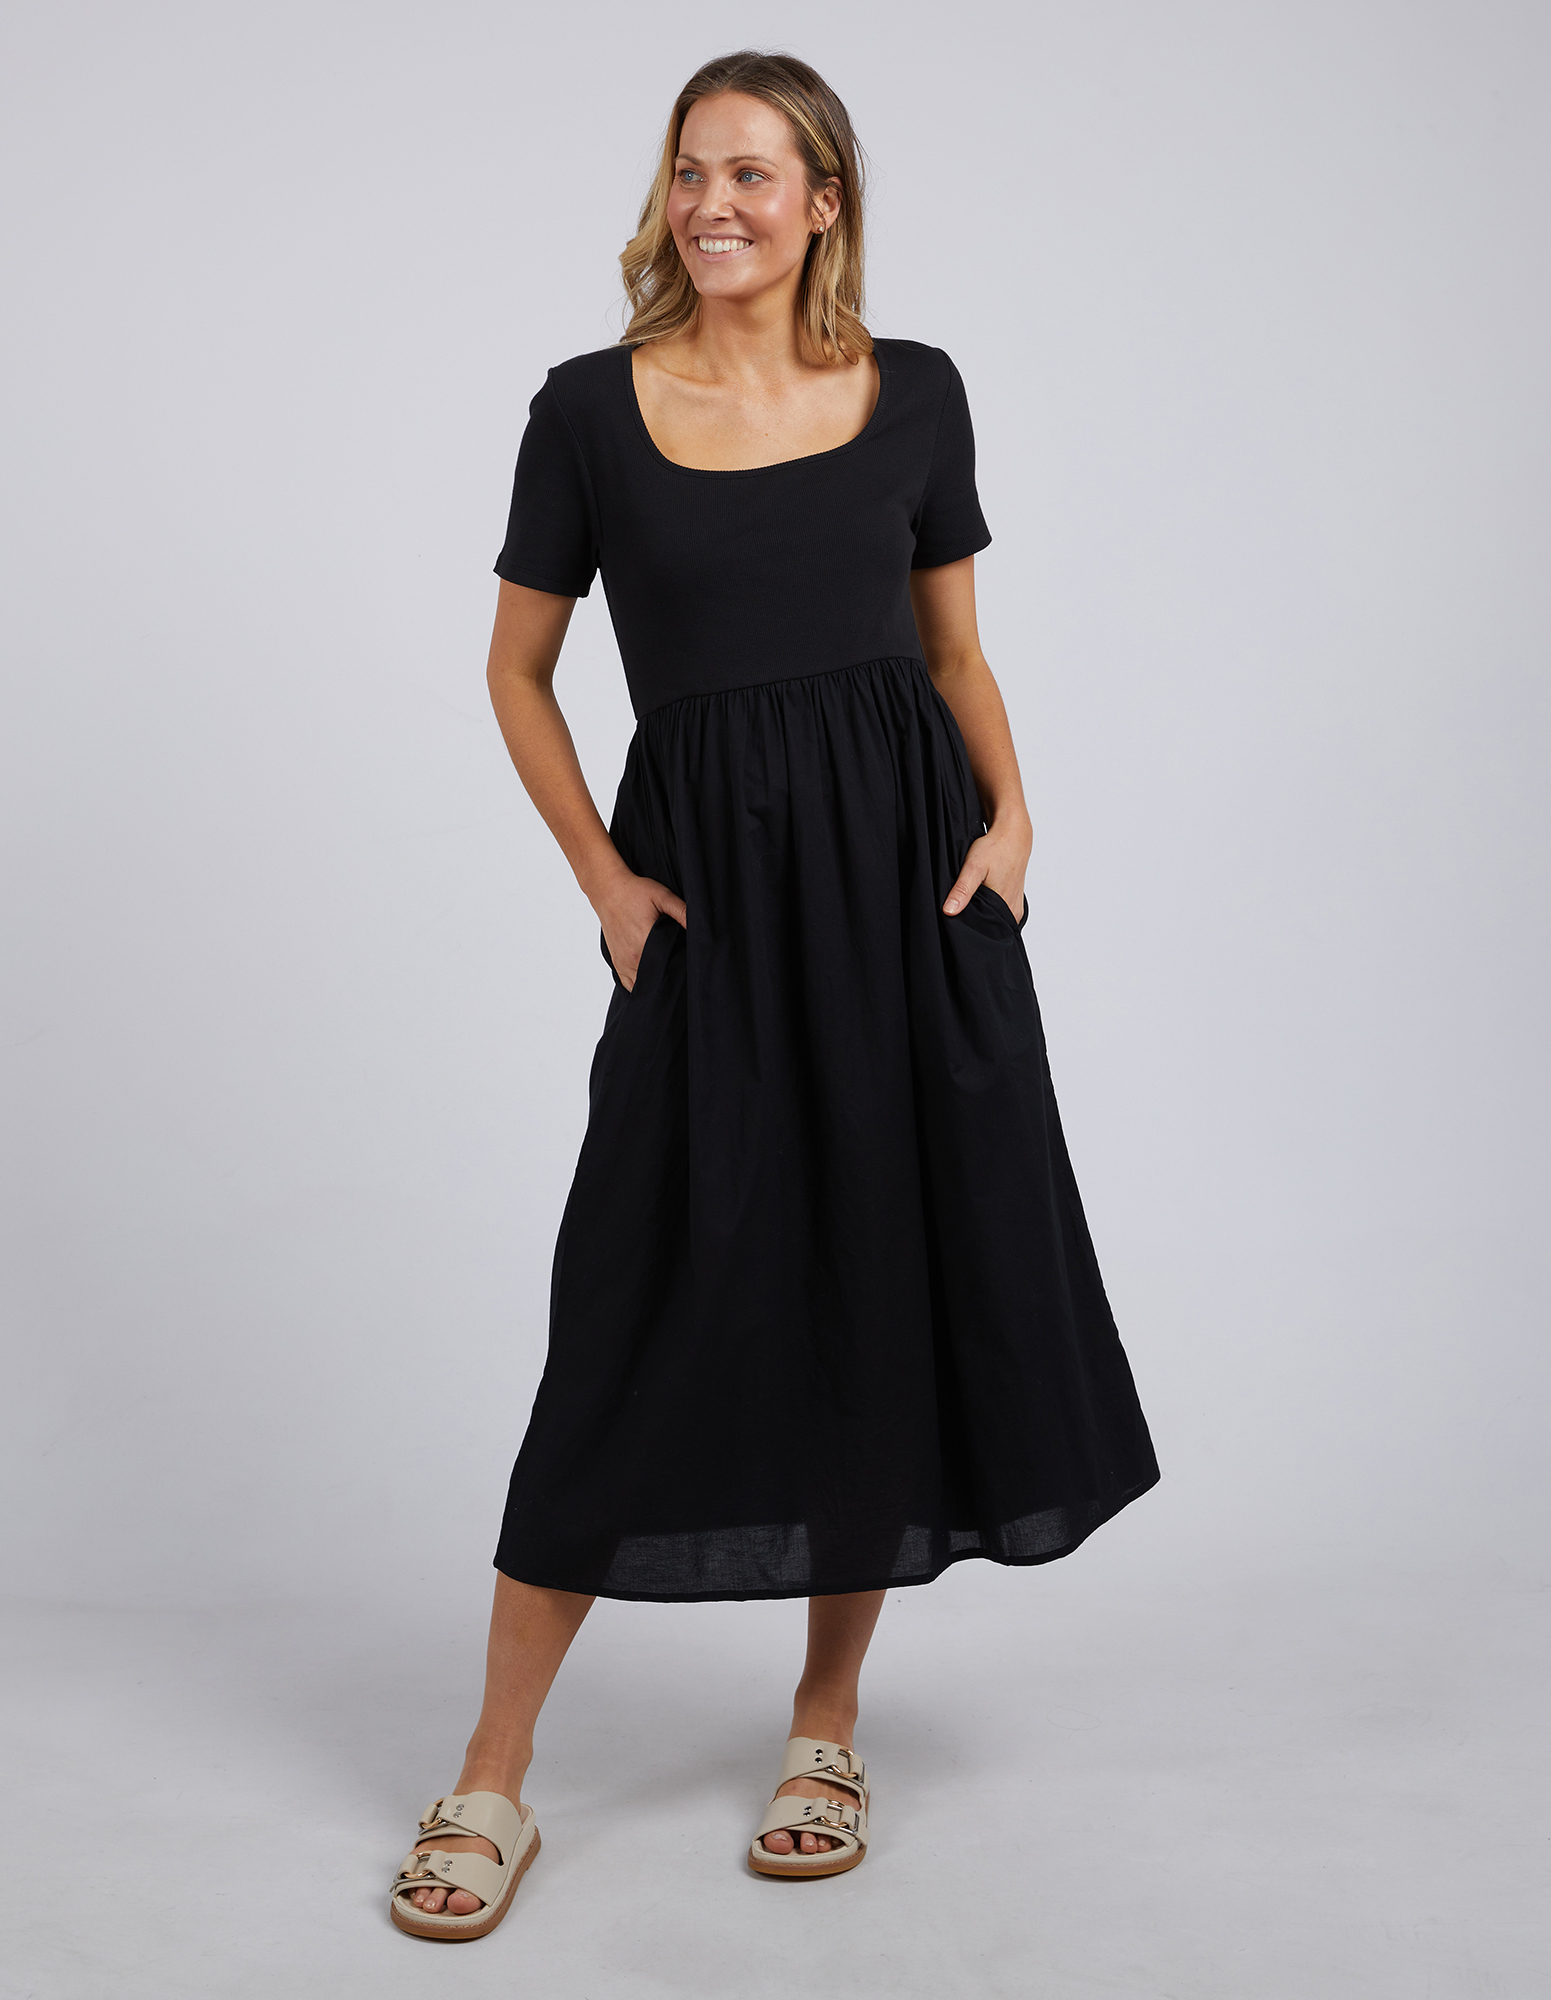 Ella Dress Black by FOXWOOD - CUT Clothing NZ